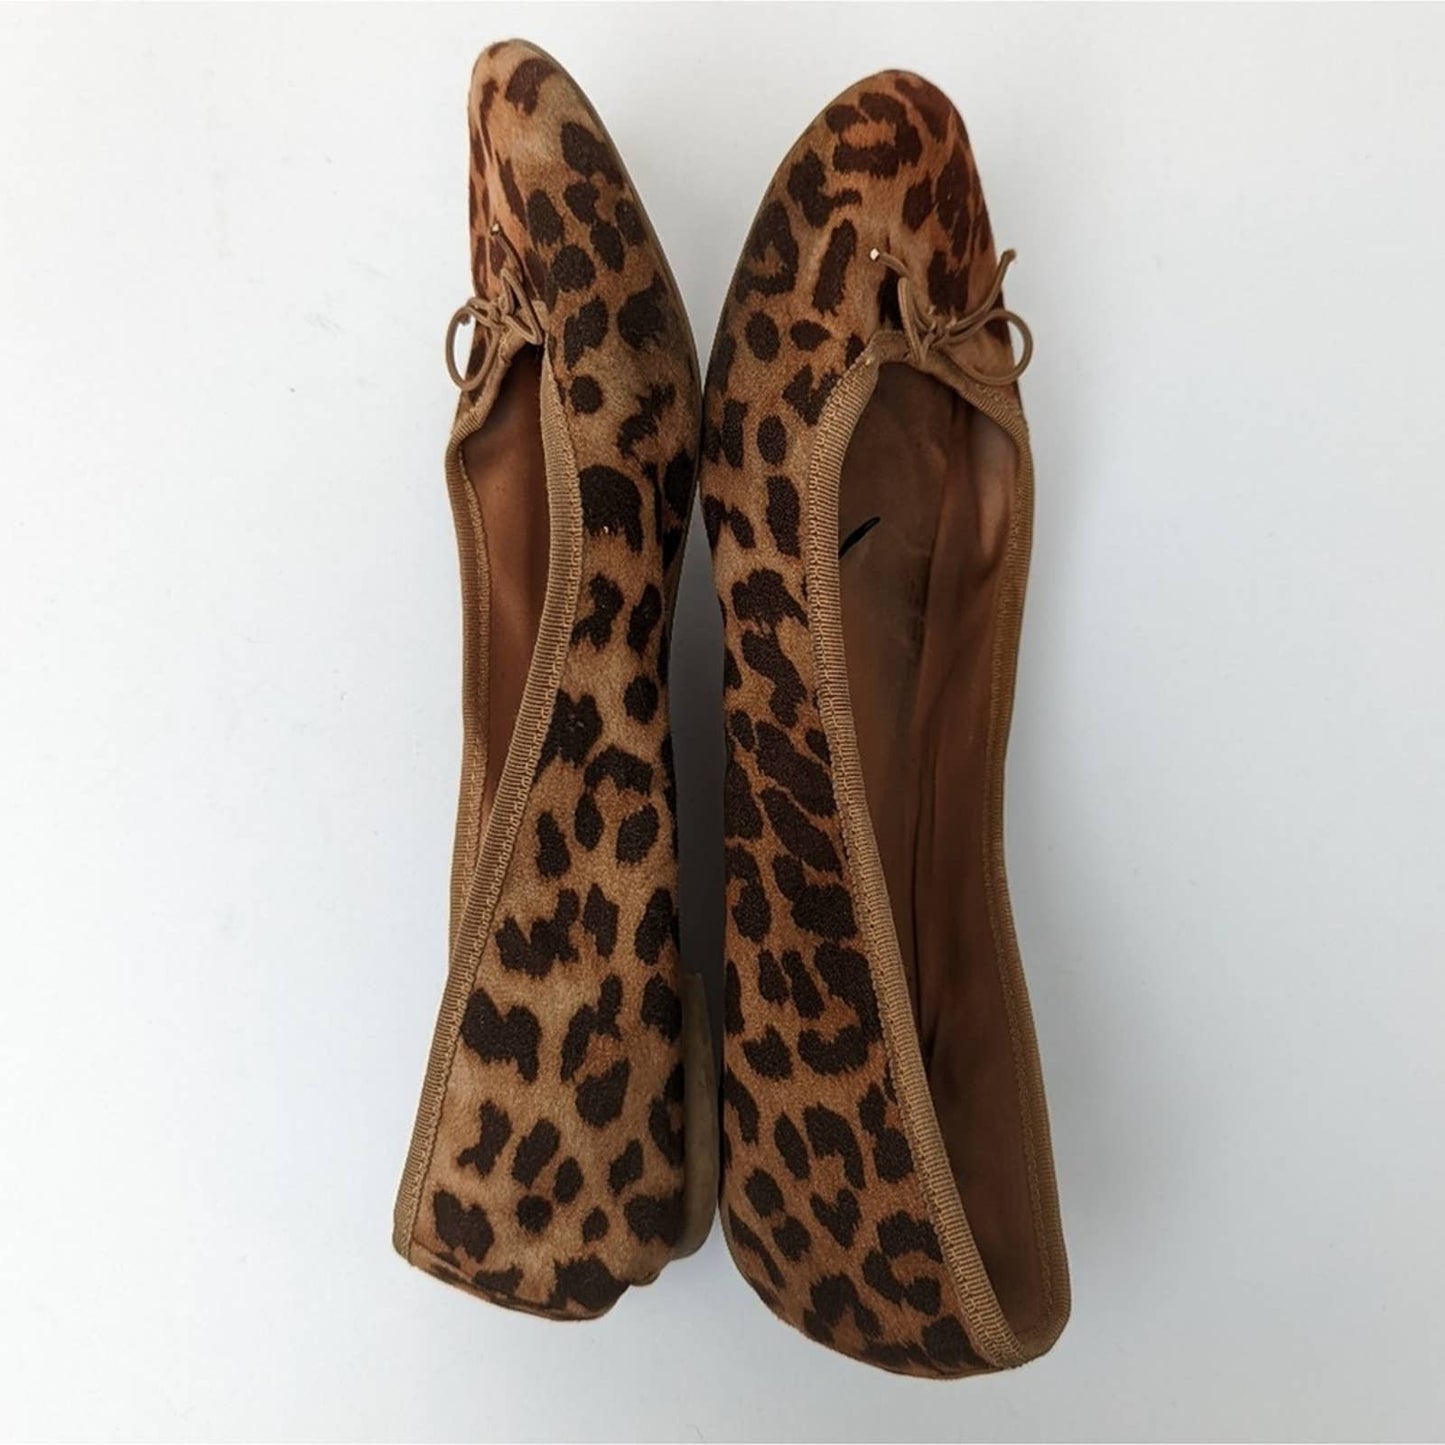 H & M Cheetah Ballet Flats - 8